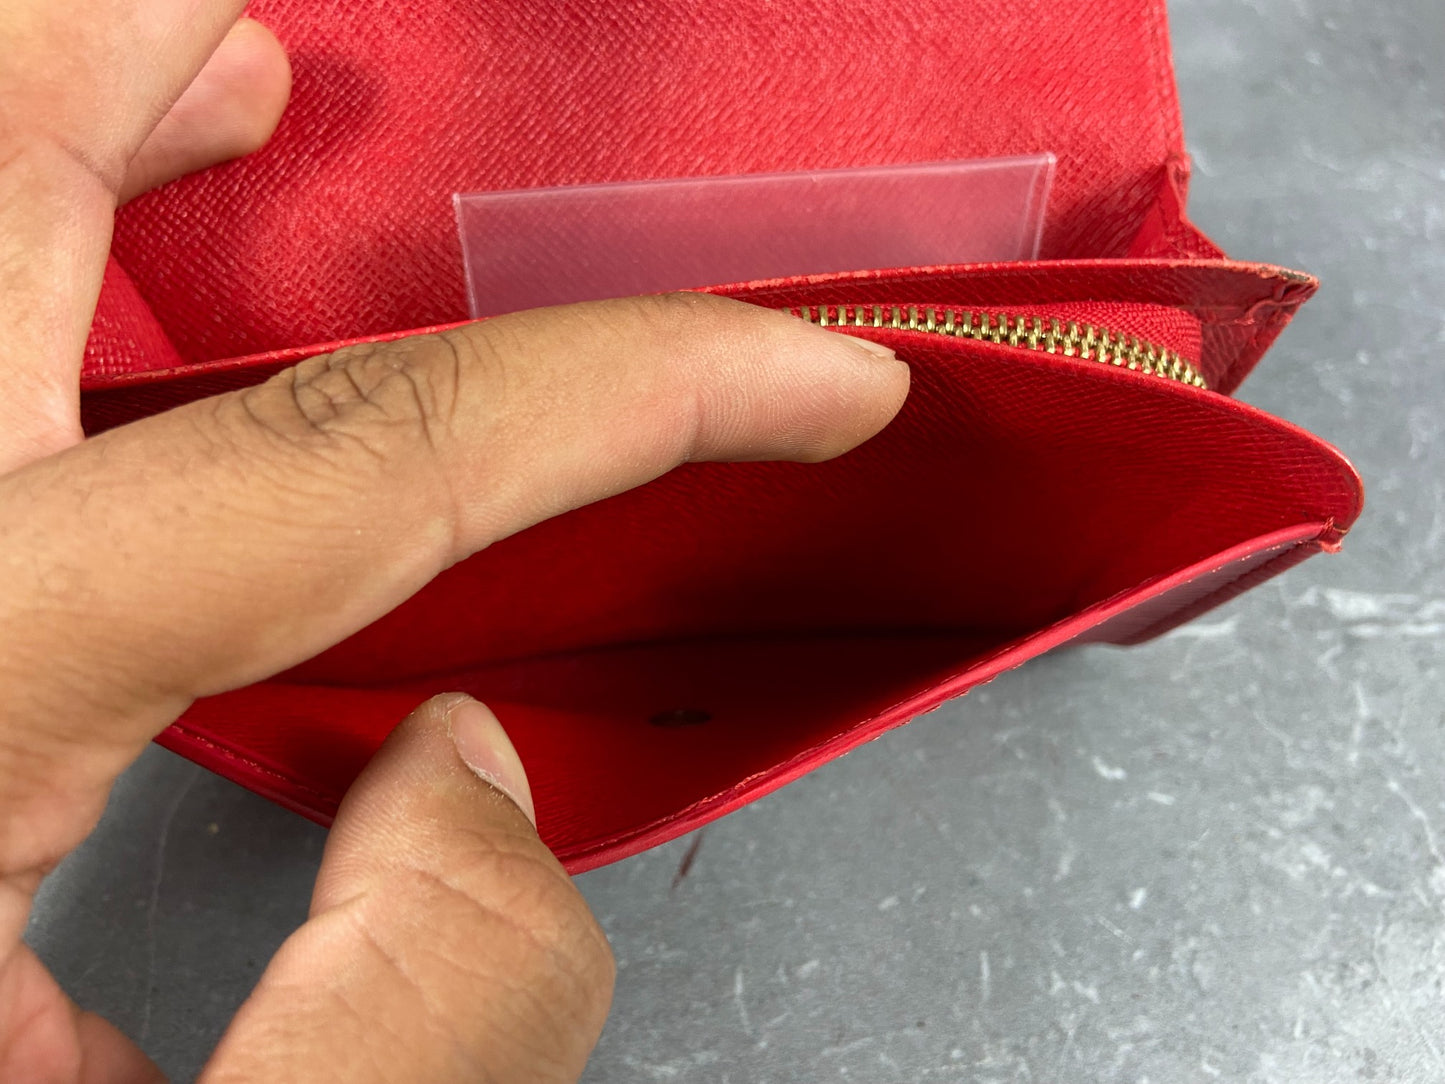 Louis Vuitton Porte-Monnaie Tresor Red Epi Leather